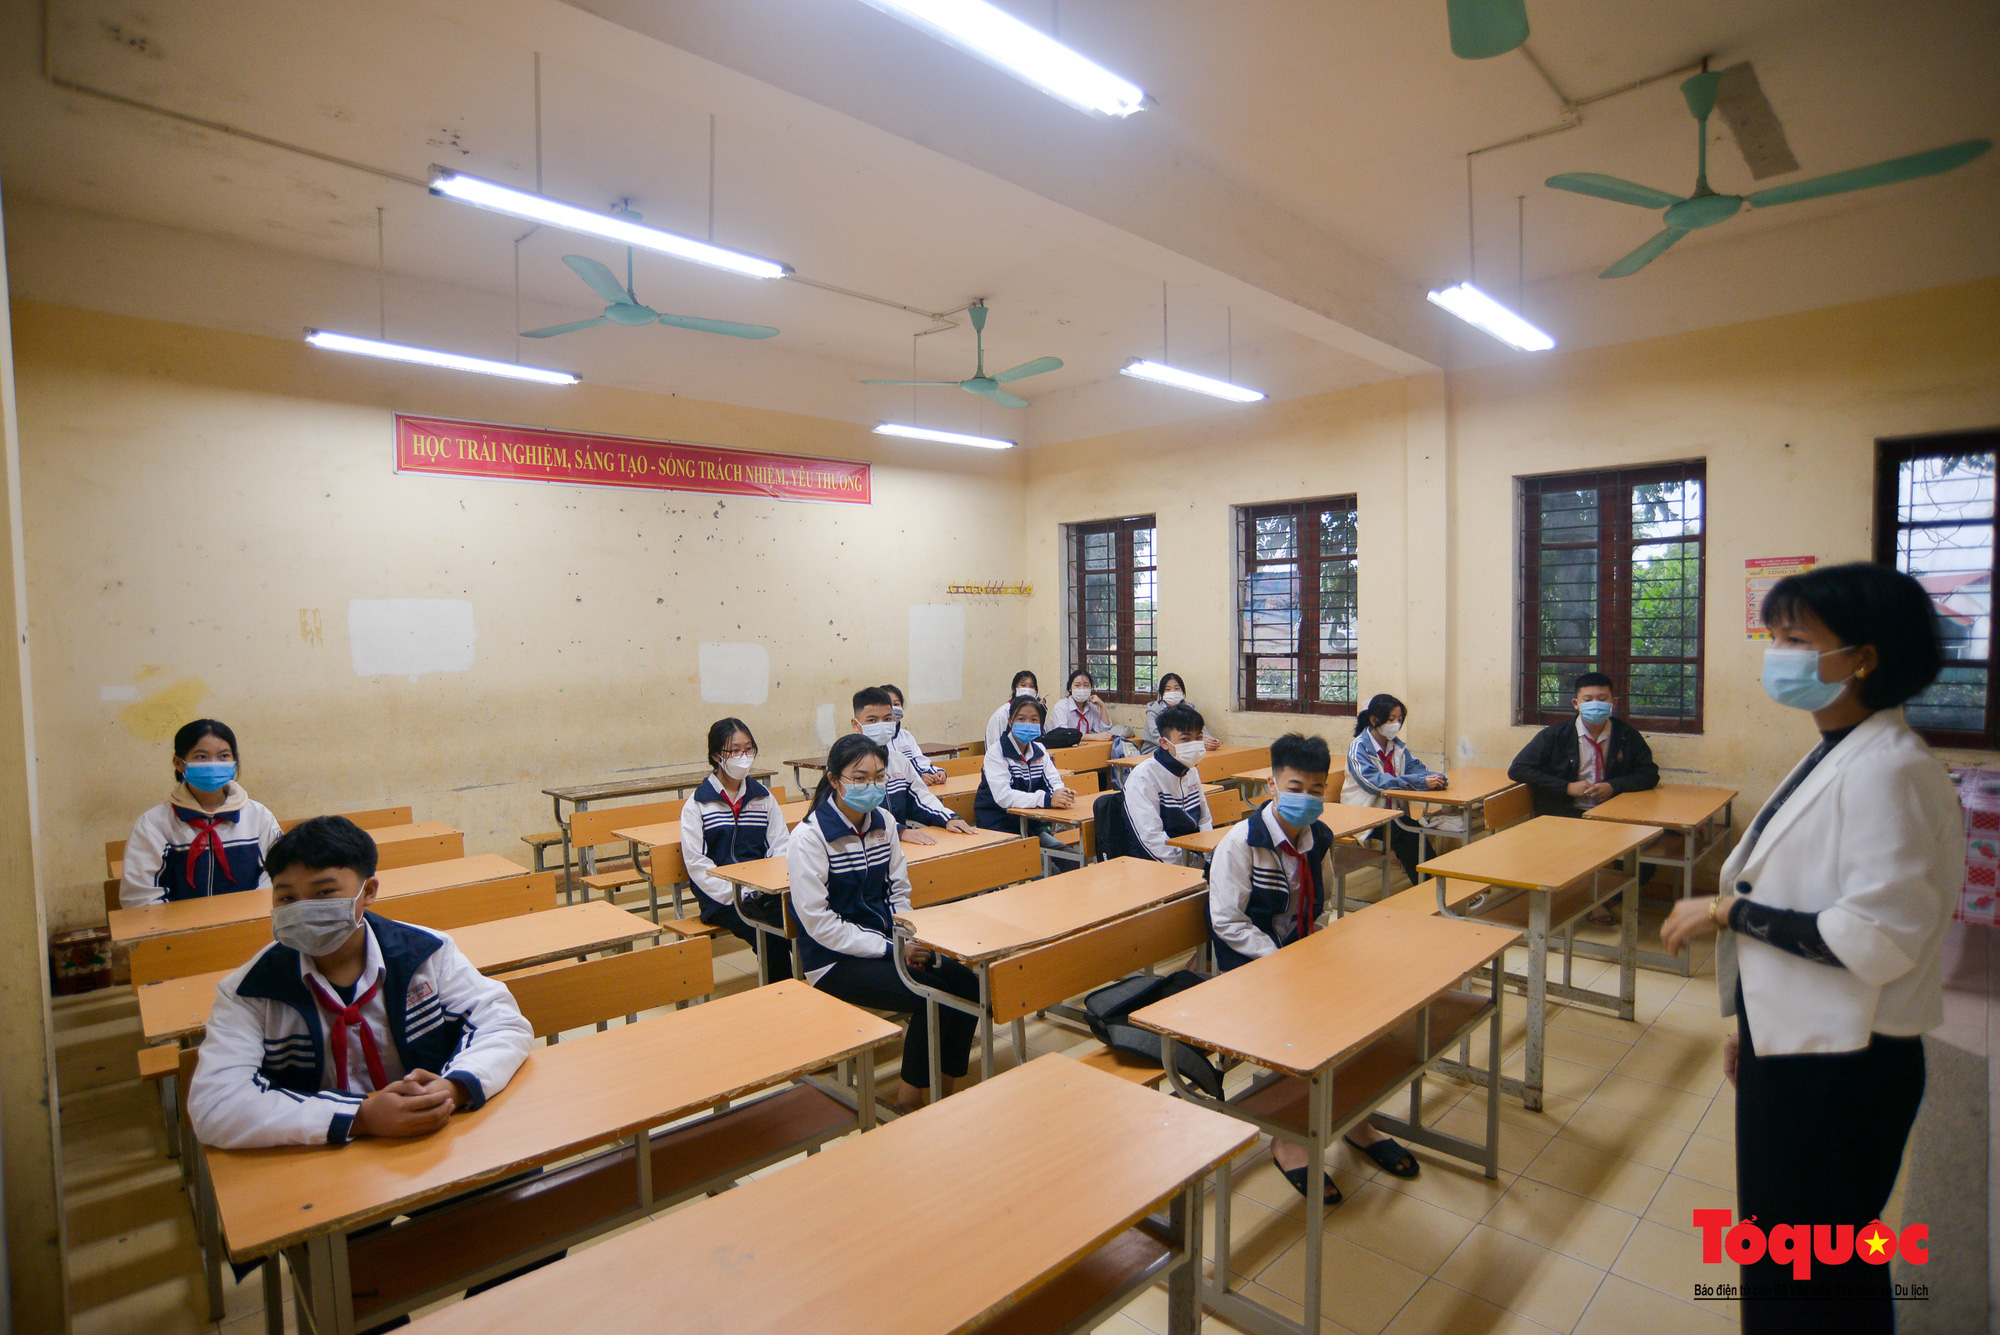 Học sinh ngoại thành Hà Nội vui mừng trở lại trường sau nửa năm nghỉ học - Ảnh 14.